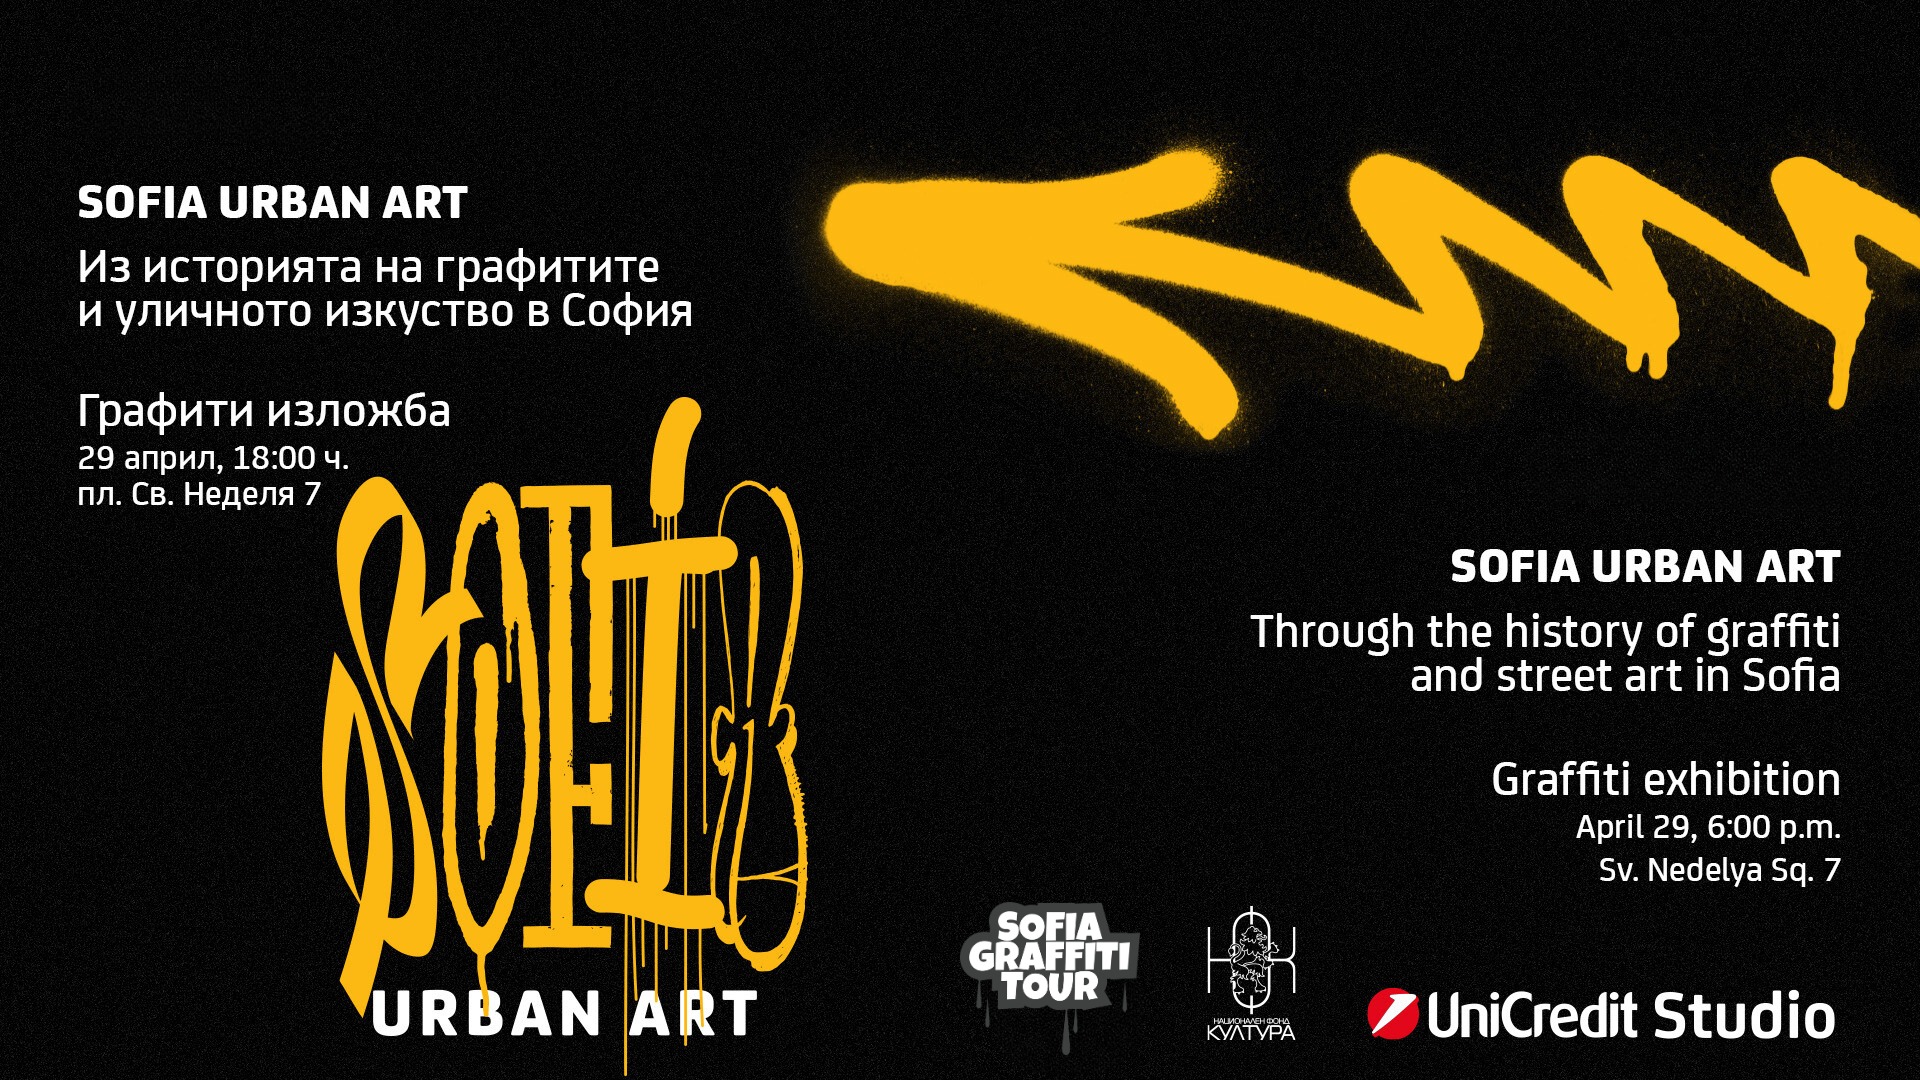 Изложбата “SOFIA URBAN ART” започва